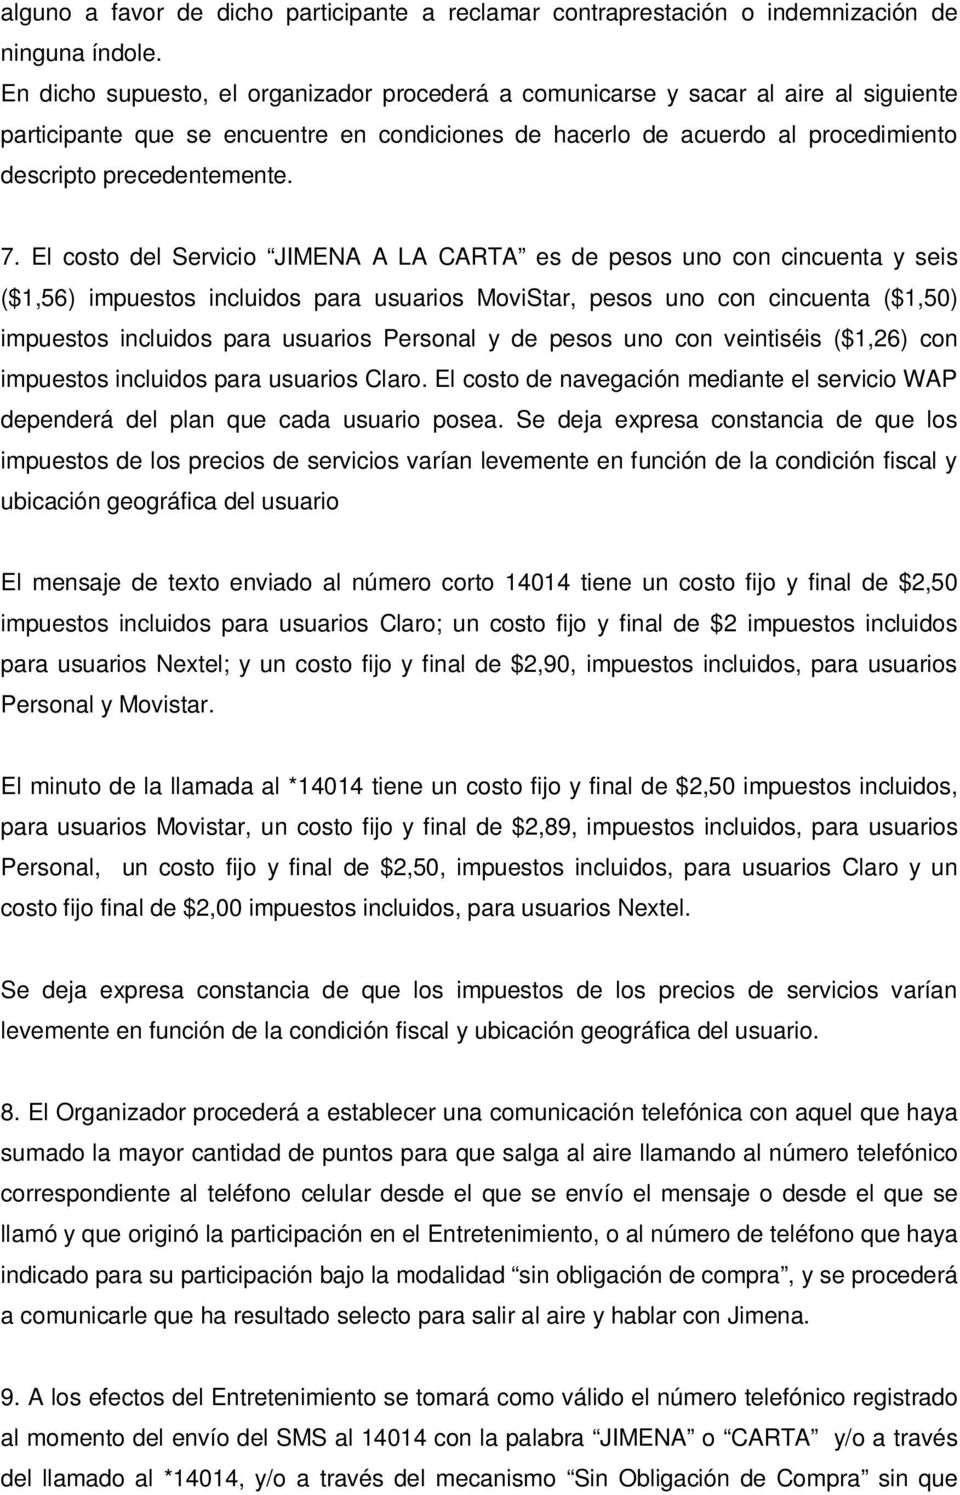 El costo del Servicio JIMENA A LA CARTA es de pesos uno con cincuenta y seis ($1,56) impuestos incluidos para usuarios MoviStar, pesos uno con cincuenta ($1,50) impuestos incluidos para usuarios